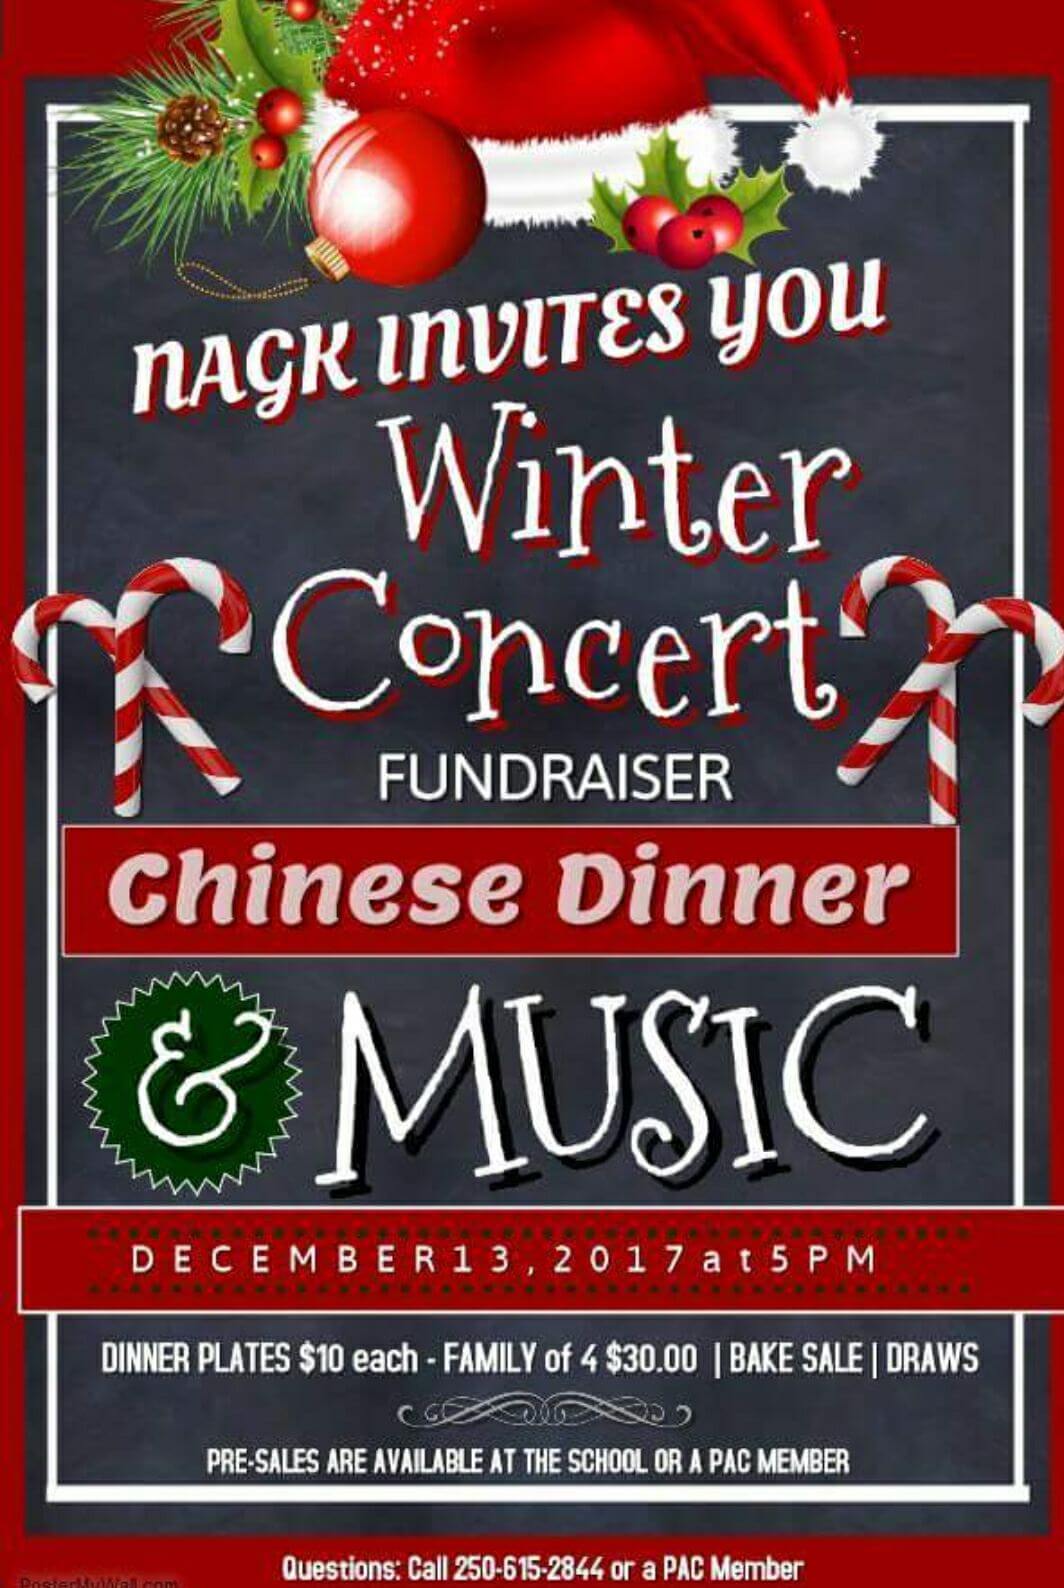 NAGK Winter Concert Fundraiser